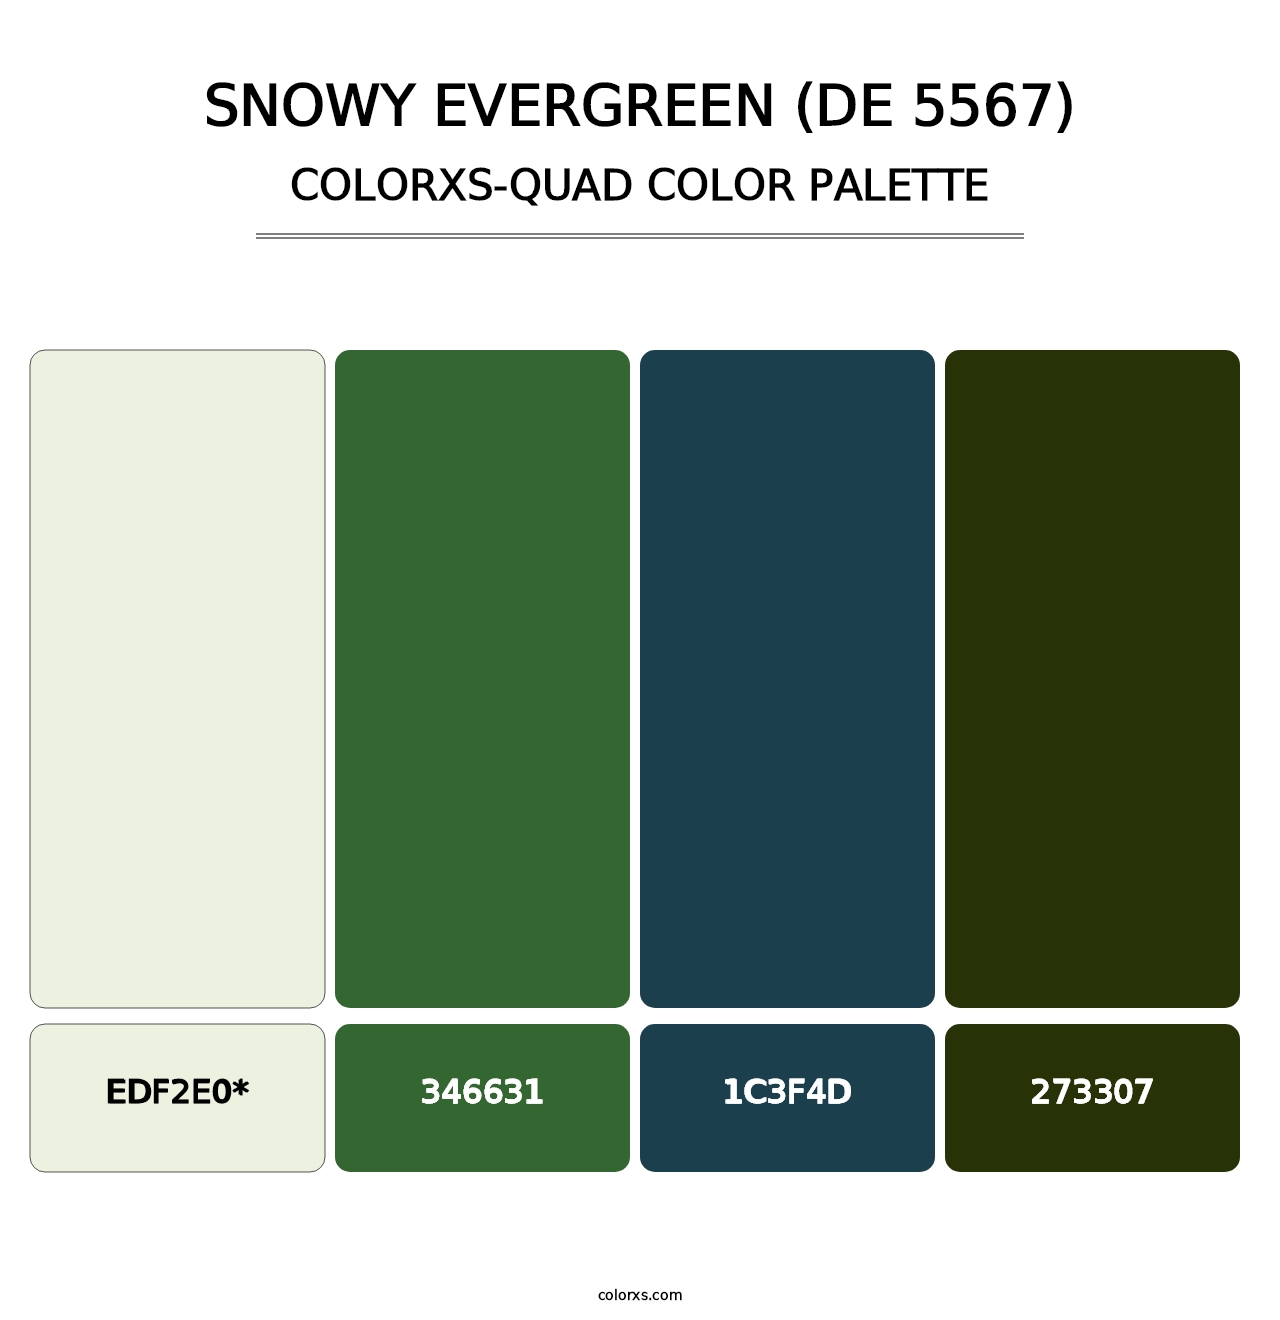 Snowy Evergreen (DE 5567) - Colorxs Quad Palette